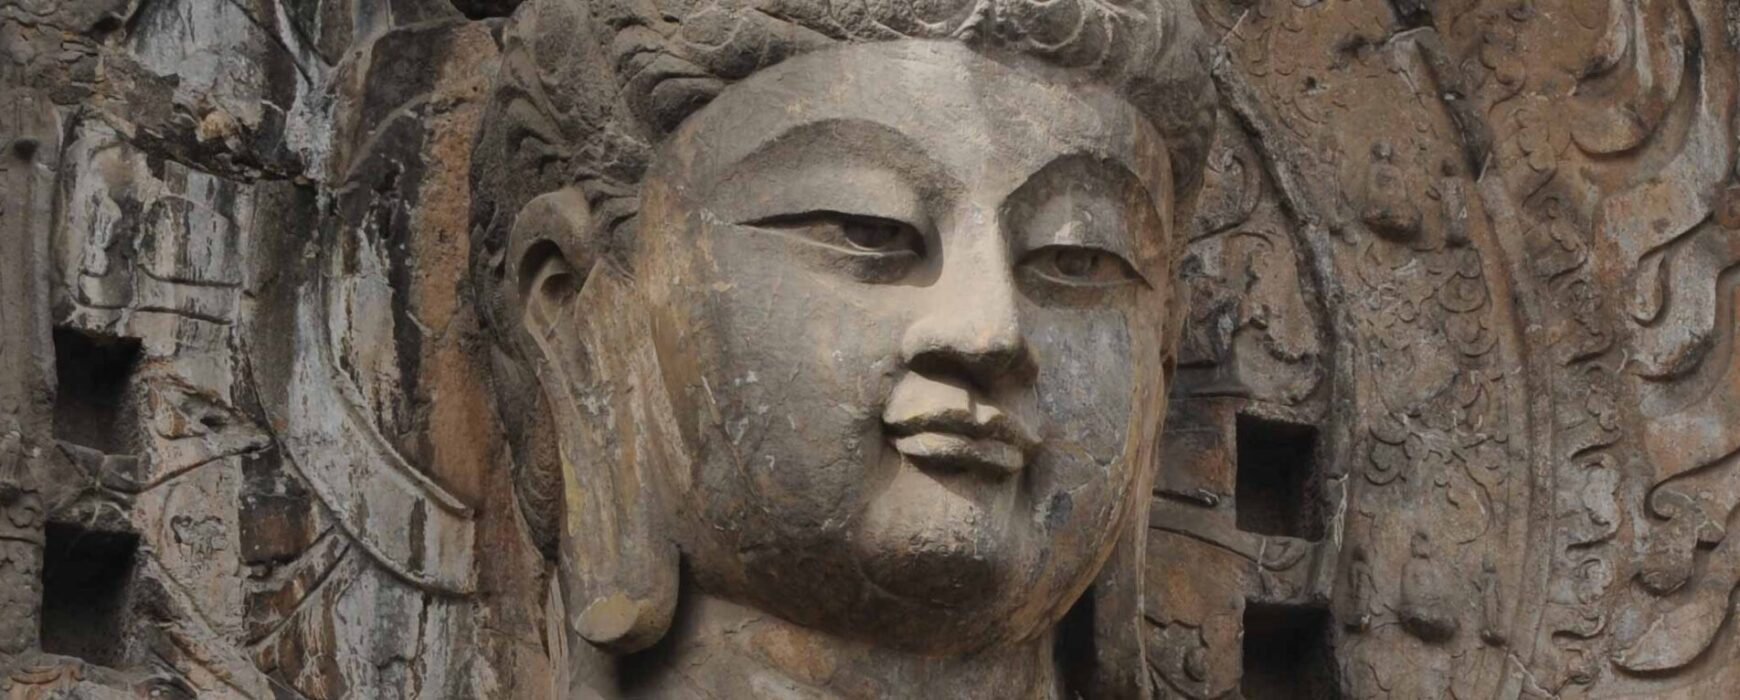 Third Volume of “Hualin Series On Buddhist Studies” (Chinese)